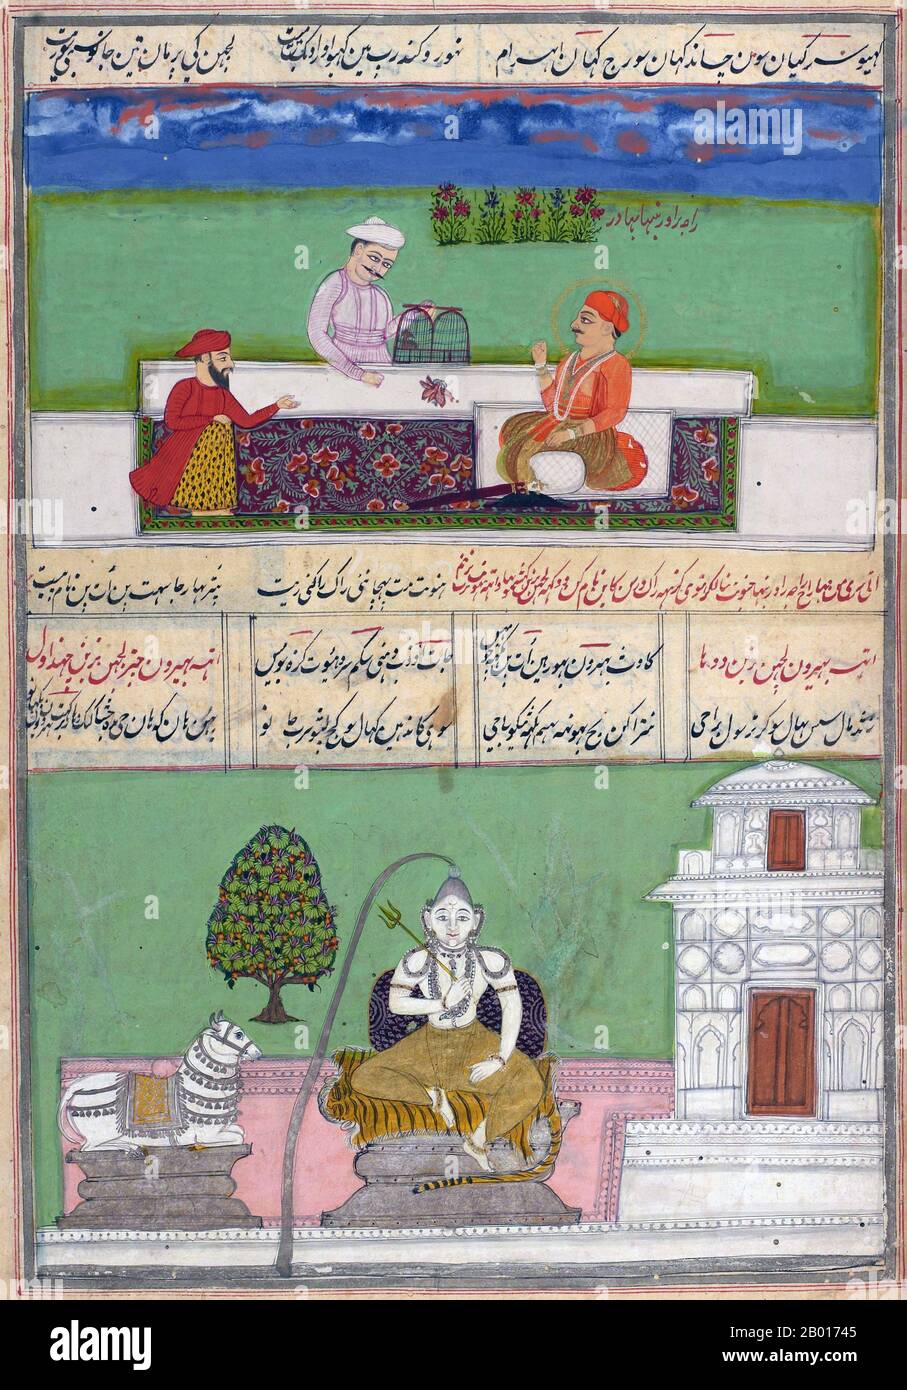 Inde: 'Ci-dessus: Raja Rao Rabanha Bahadur avec deux hommes et un oiseau sur la table; ci-dessous: Bhairav Raga, as Siva'.Peinture miniature Ragamala, c.1800. Les peintures de Ragamala sont une série de peintures illustratives de l'Inde médiévale basée sur Ragamala ou le "Garland de Ragas", représentant divers noeuds musicaux indiens, Ragas.Ils sont un exemple classique de la fusion de l'art, de la poésie et de la musique classique dans l'Inde médiévale.Les peintures de Ragamala ont été créées dans la plupart des écoles de peinture indienne, à partir des XVIe et XVIIe siècles. Banque D'Images